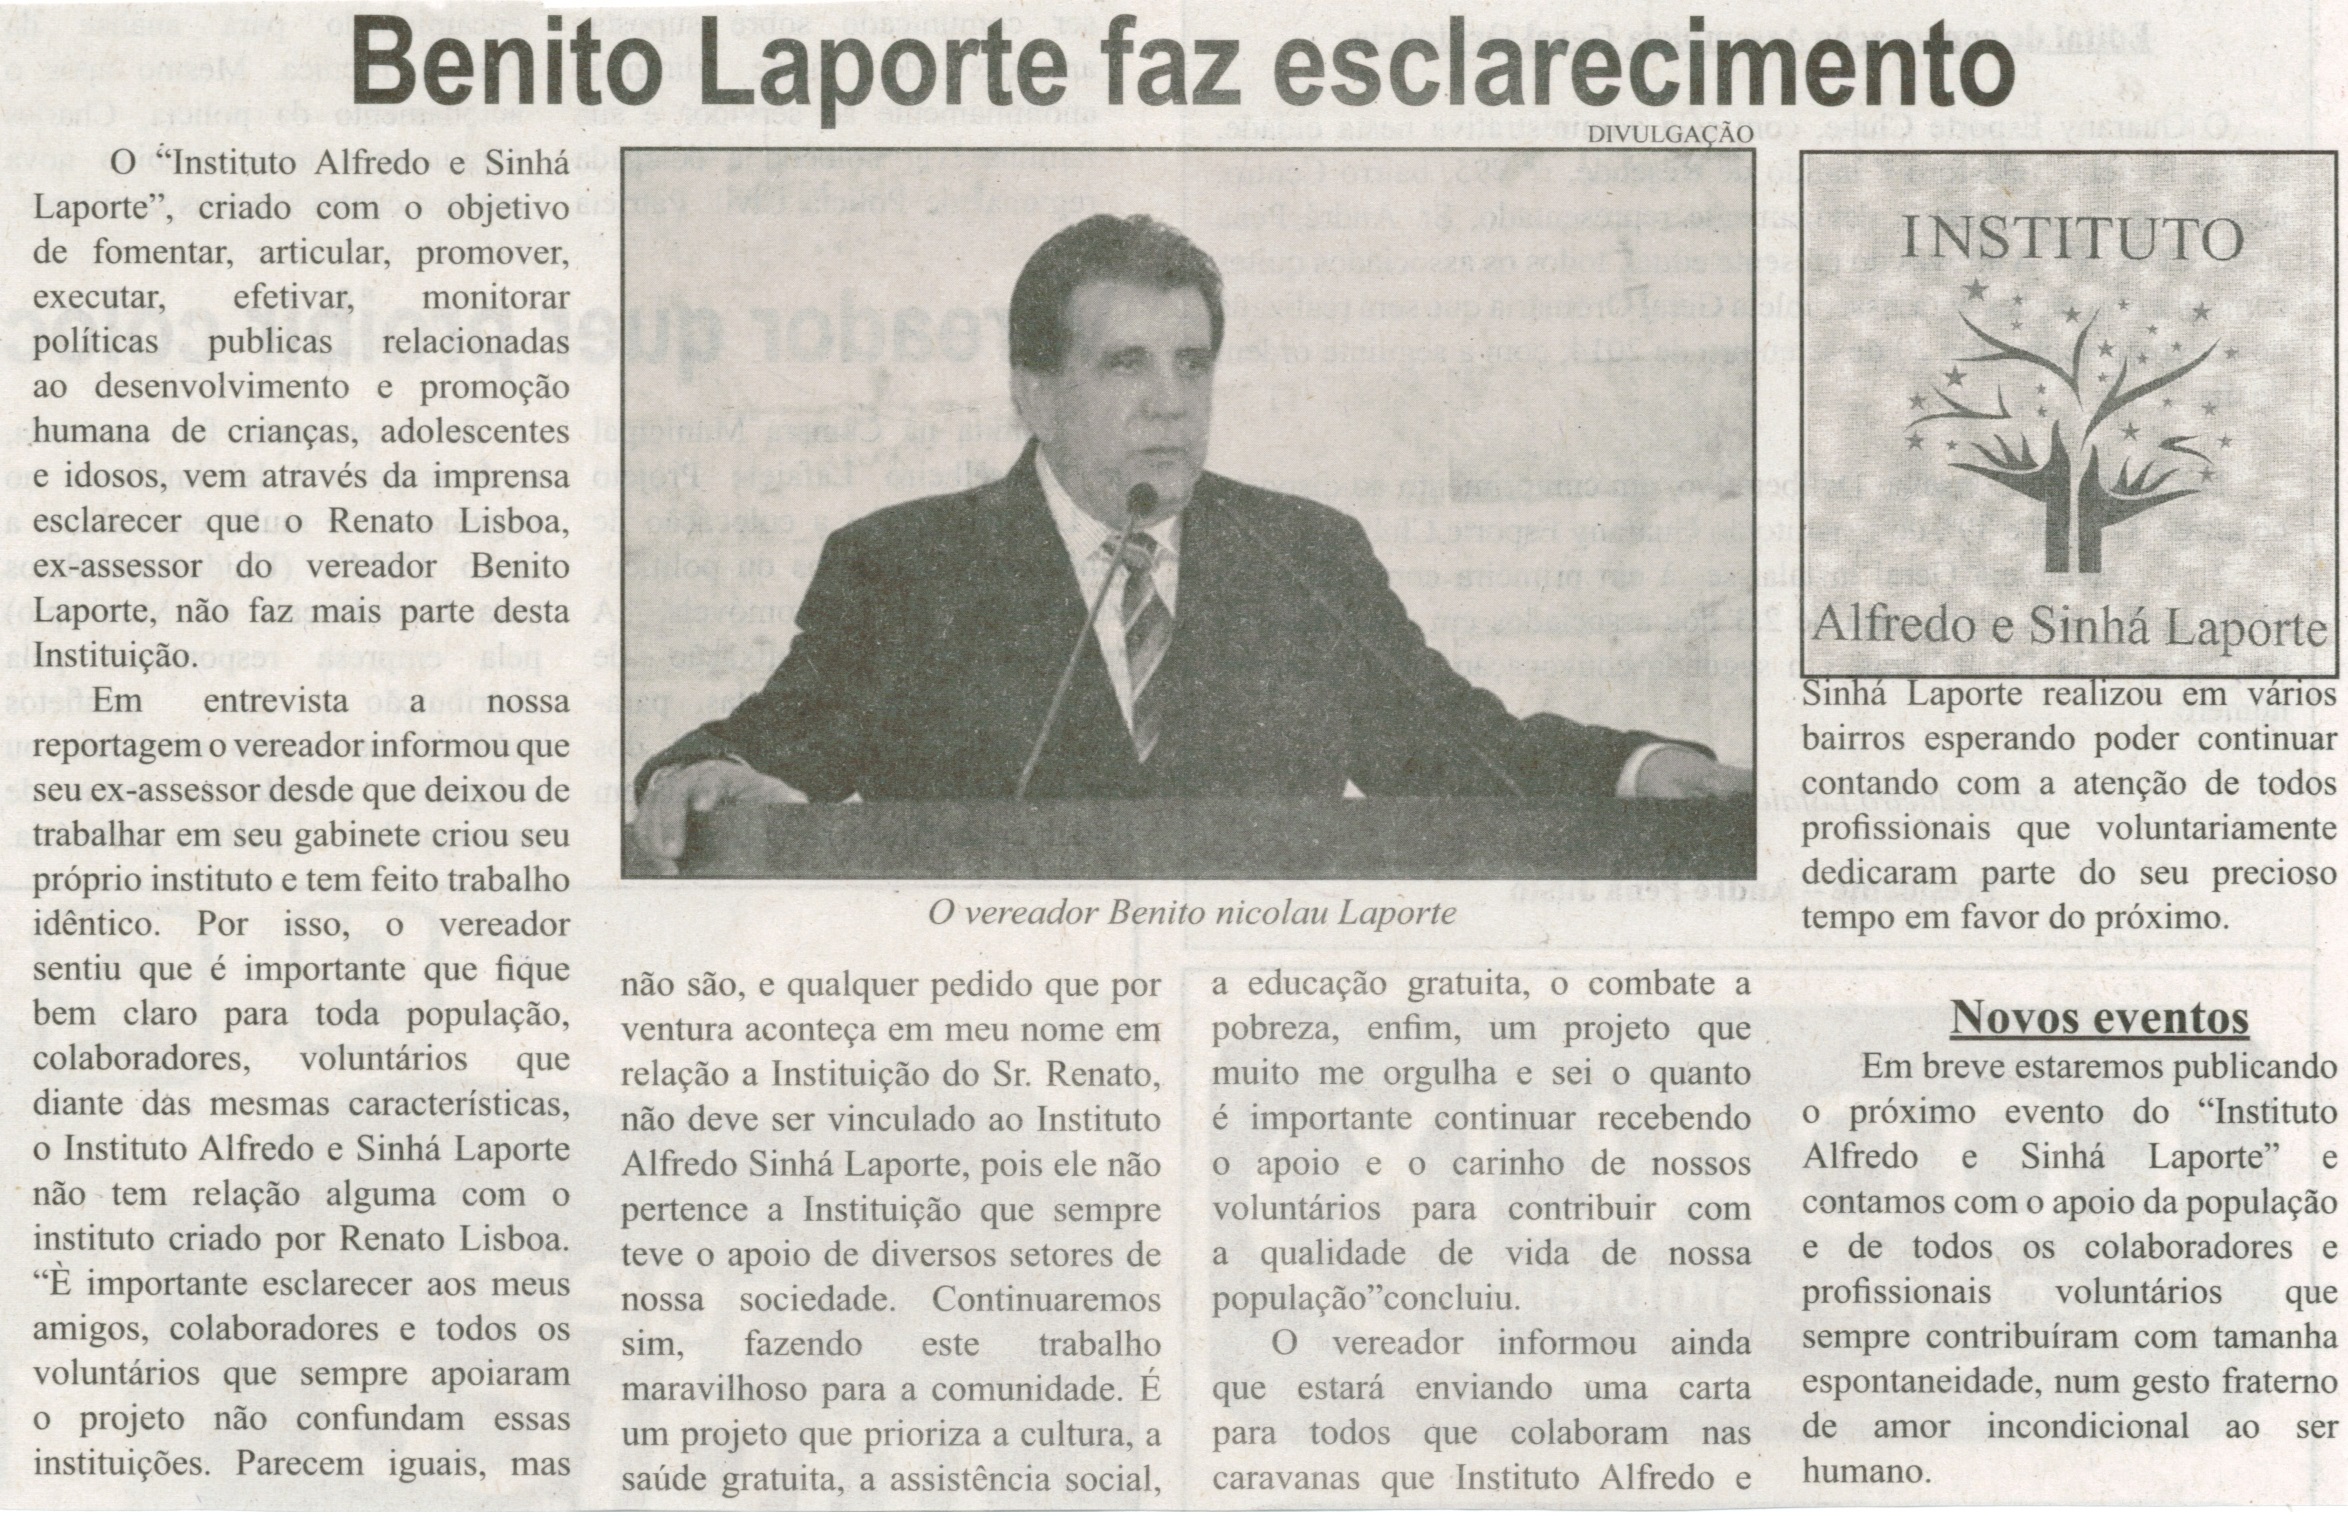 Benito Laporte faz esclarecimentos. Correio de Minas, Conselheiro Lafaiete, 06 set. 2014, p. 4.